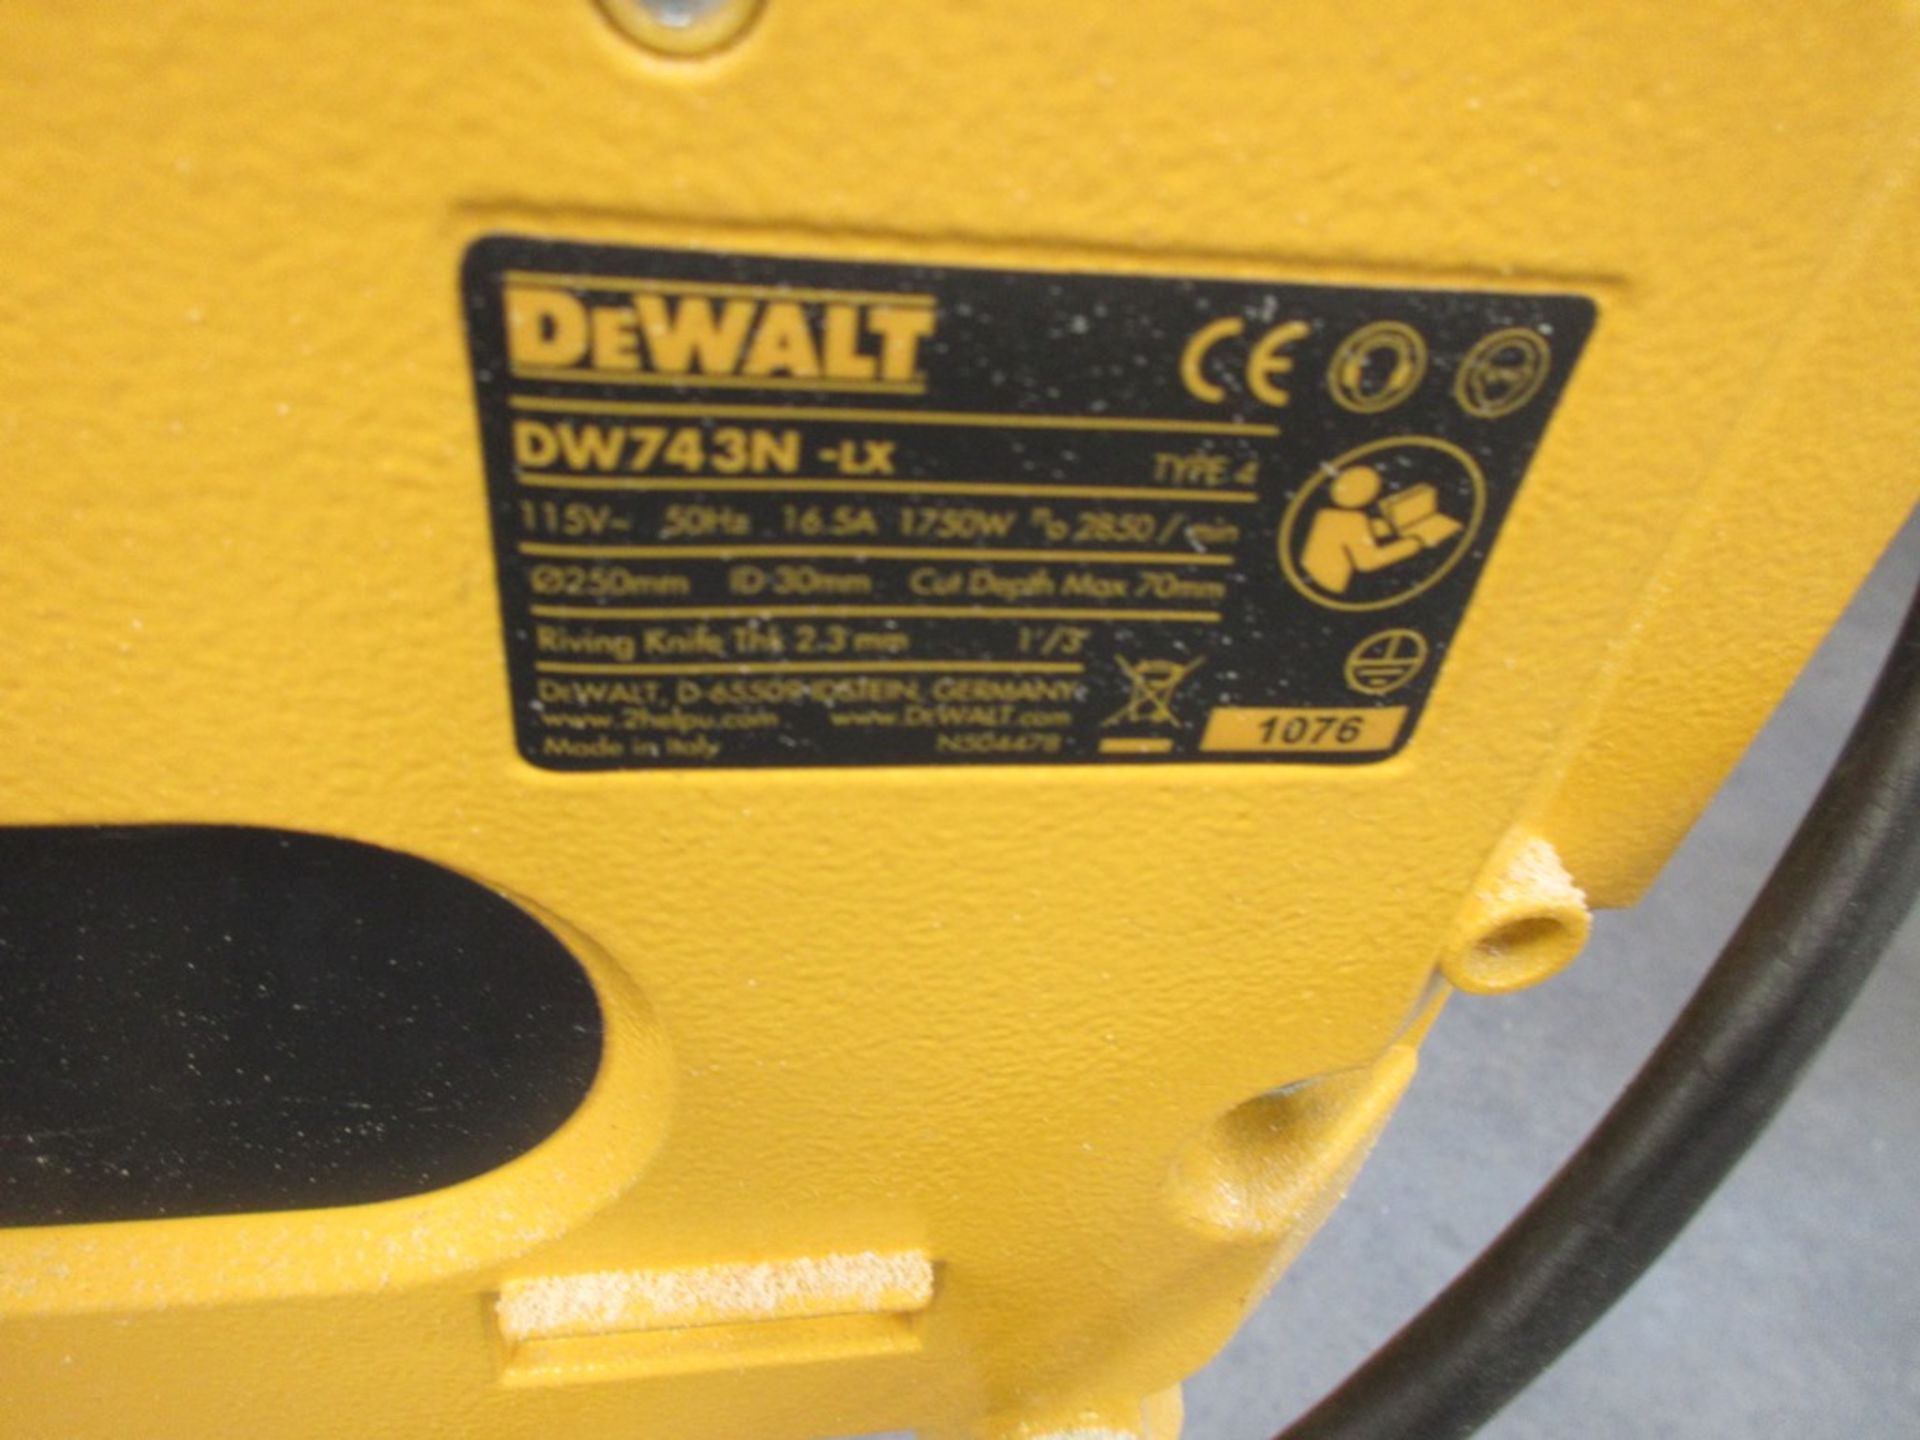 Dewalt DW743N-LX Type 4 table saw - Image 4 of 5